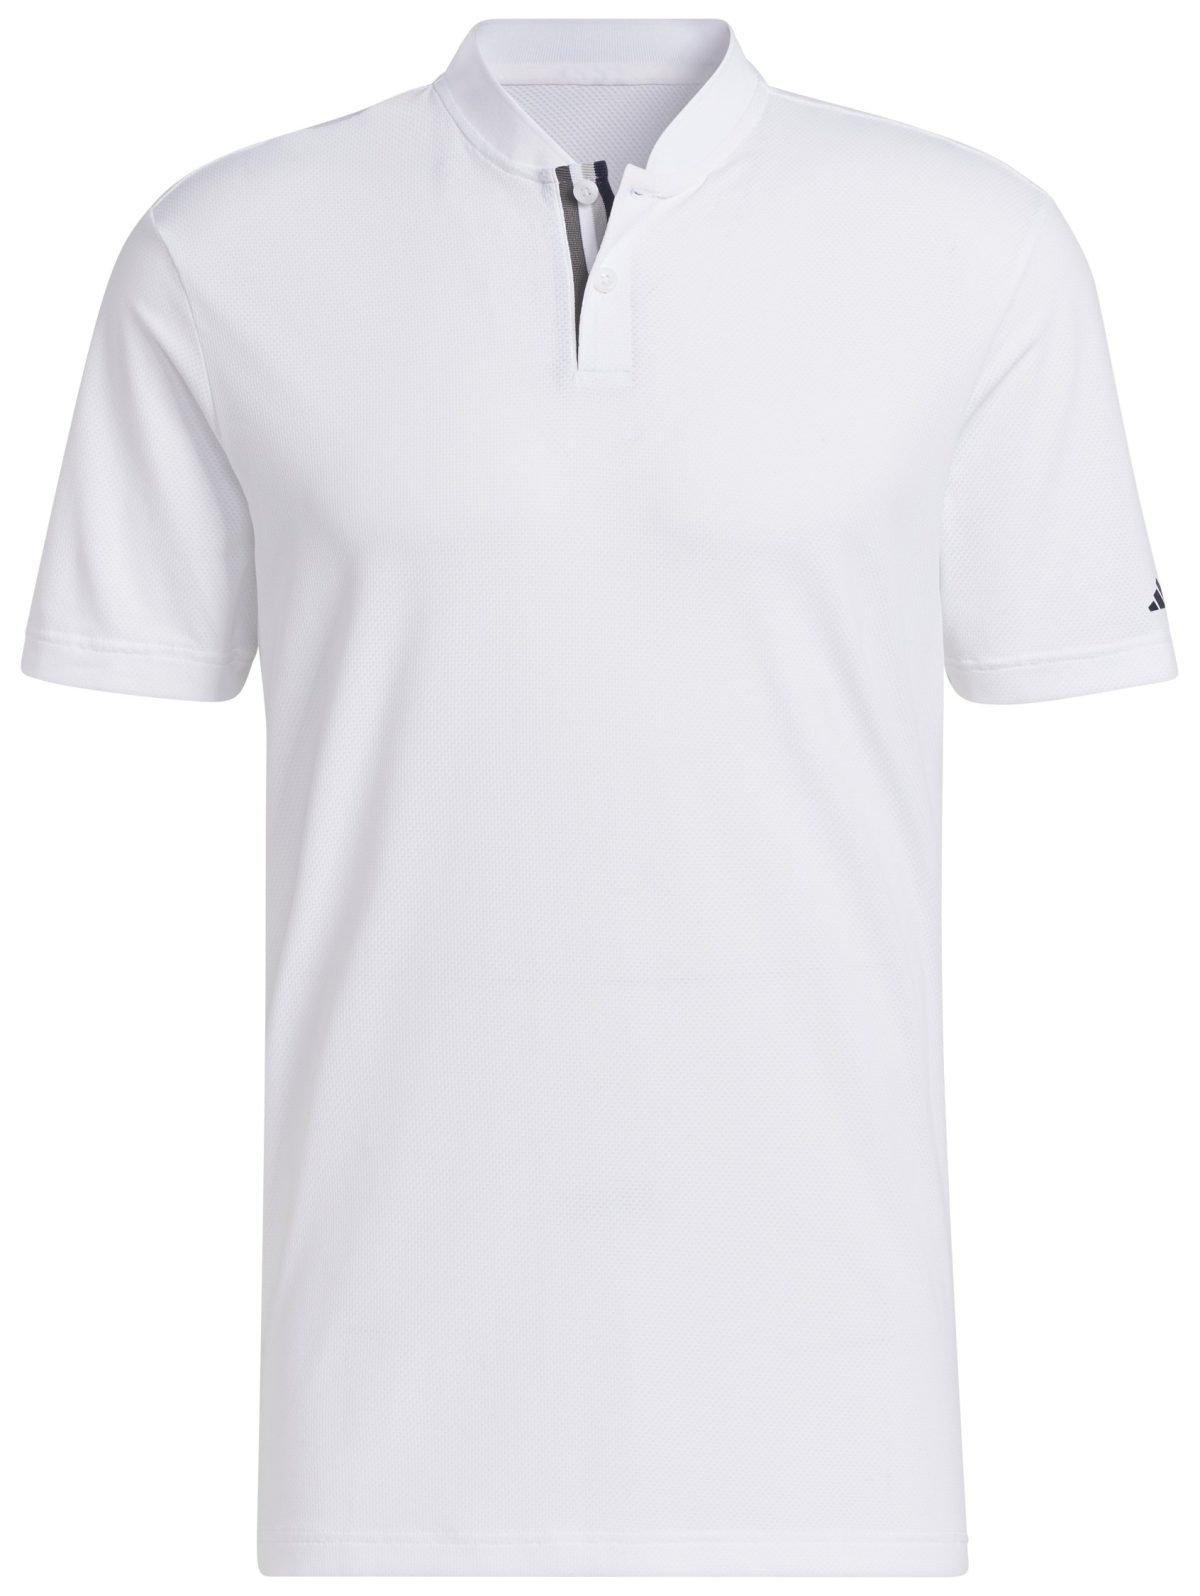 adidas Men's Ultimate365 Tour Golf Polo Shirt, Nylon/Elastane in White, Size M